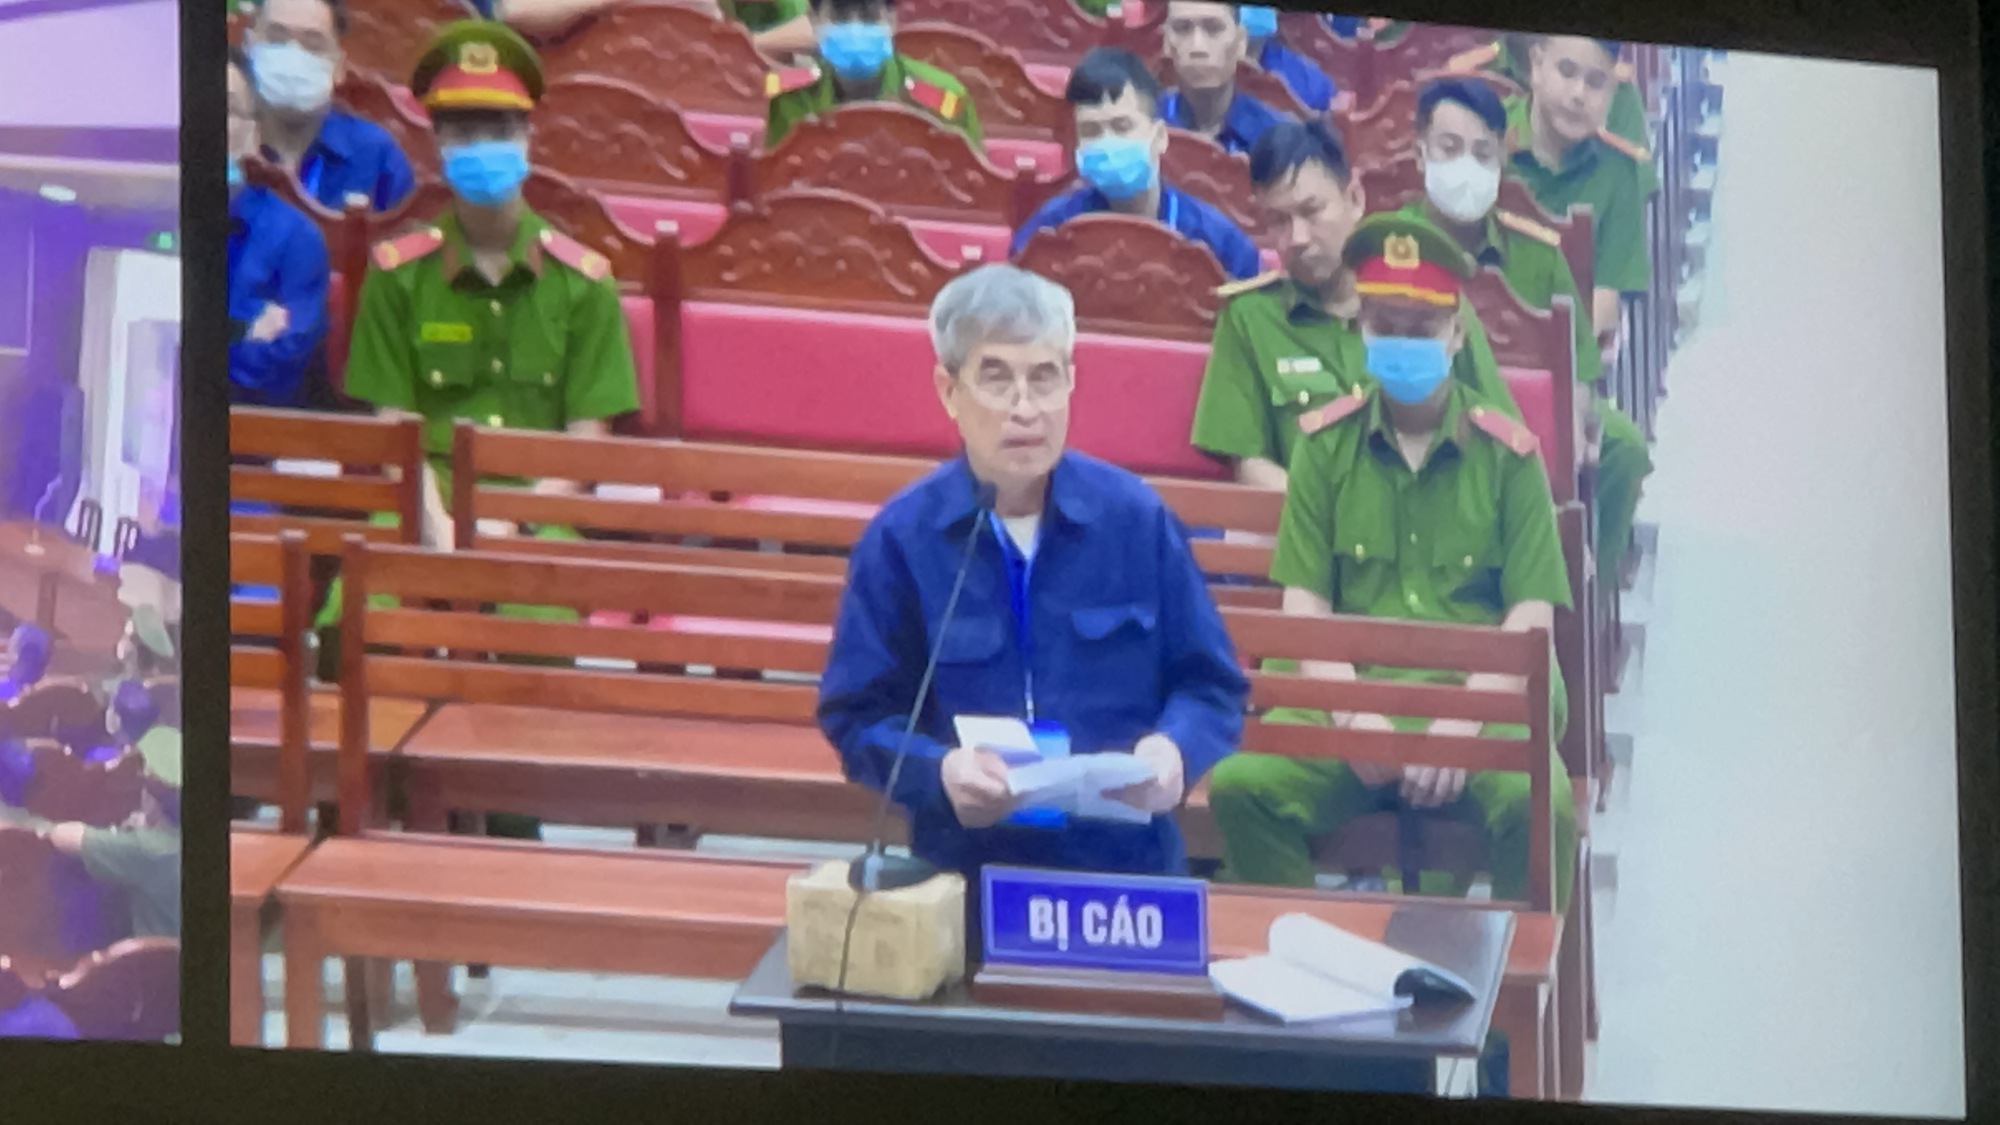 Phan Thanh Hữu khai không liên hệ với chủ hàng ở Singapore và muốn đưa hàng về Việt Nam phải xin nhiều lực lượng - Ảnh 1.